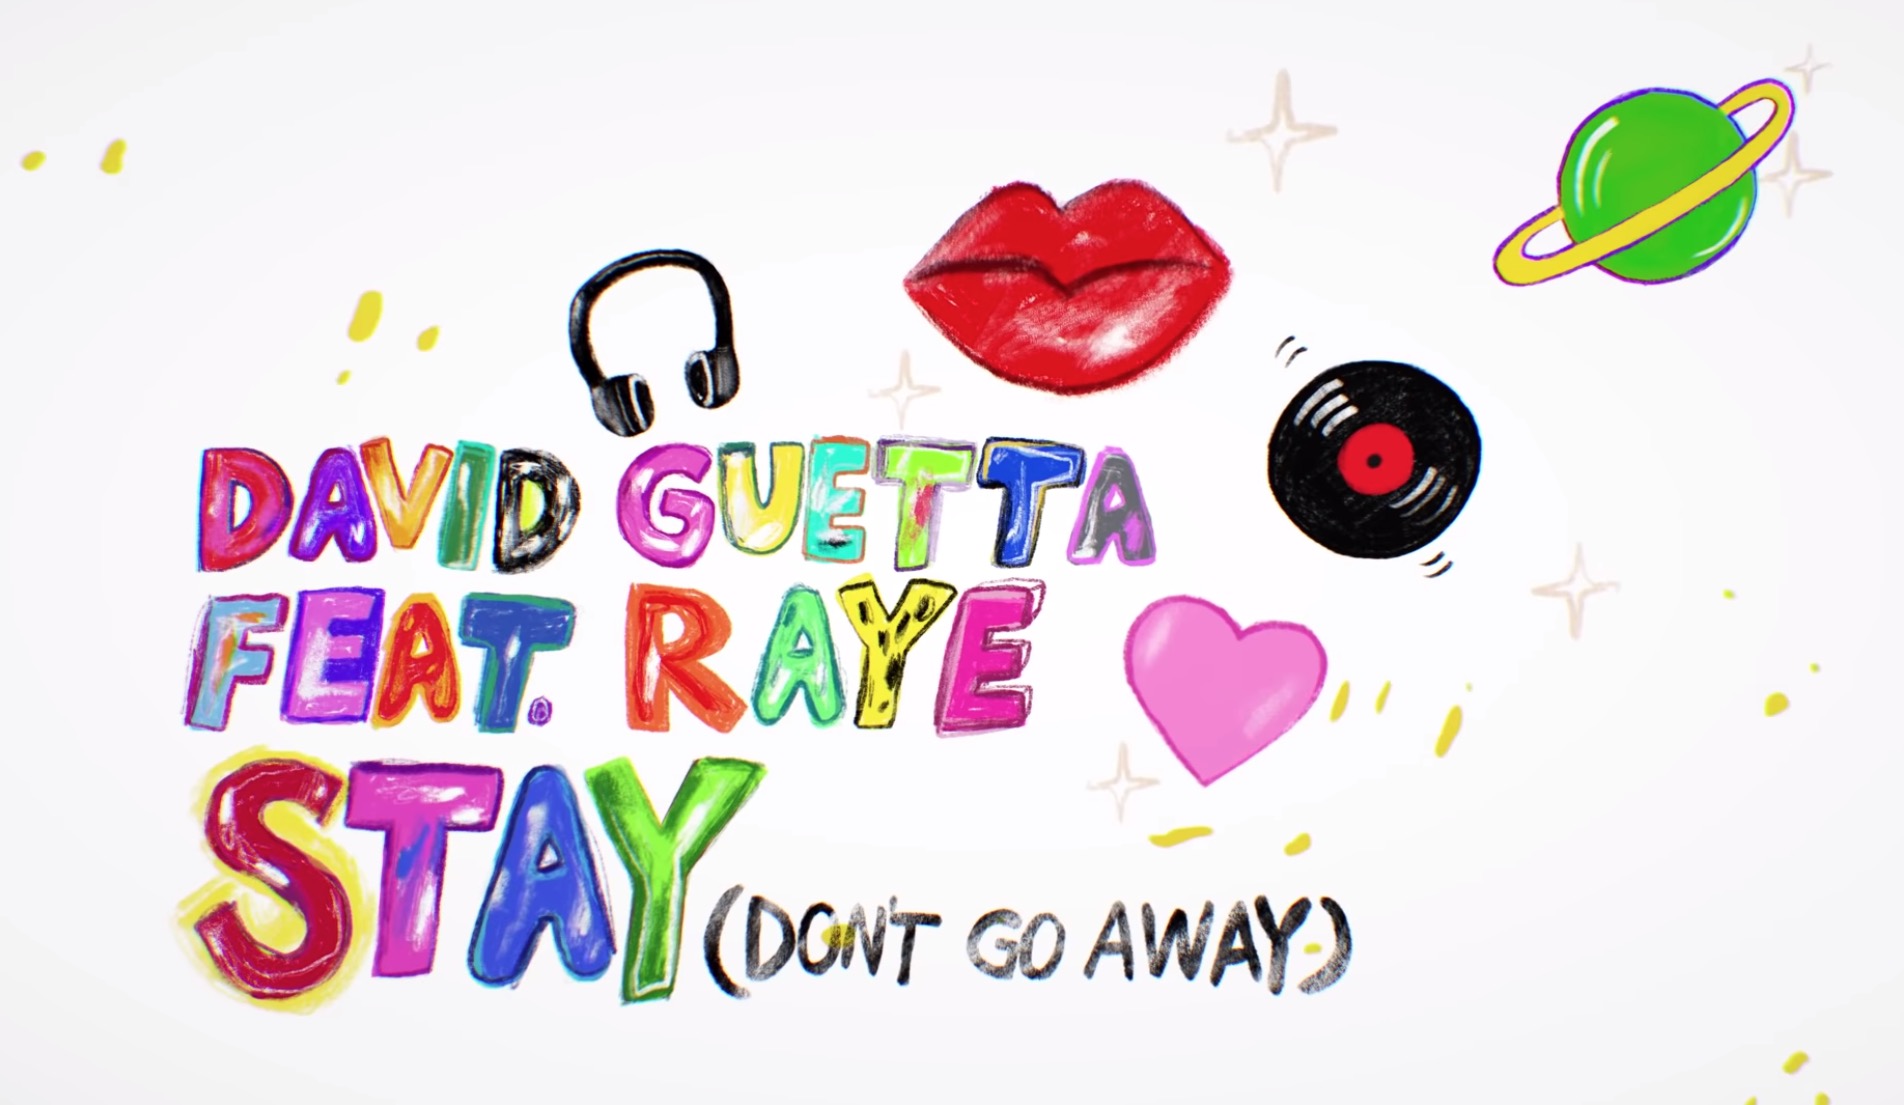 David Guetta feat. Raye - stay (don't go away). David Guetta ft Raye - stay (Orbz Remix). David Guetta featuring Raye - stay (don't go away) (Nicky Romero Remix). Stay (don't go away) Nico de Andrea Remix; feat. Raye David Guetta, Nico de Andrea, Raye. Don t stay away